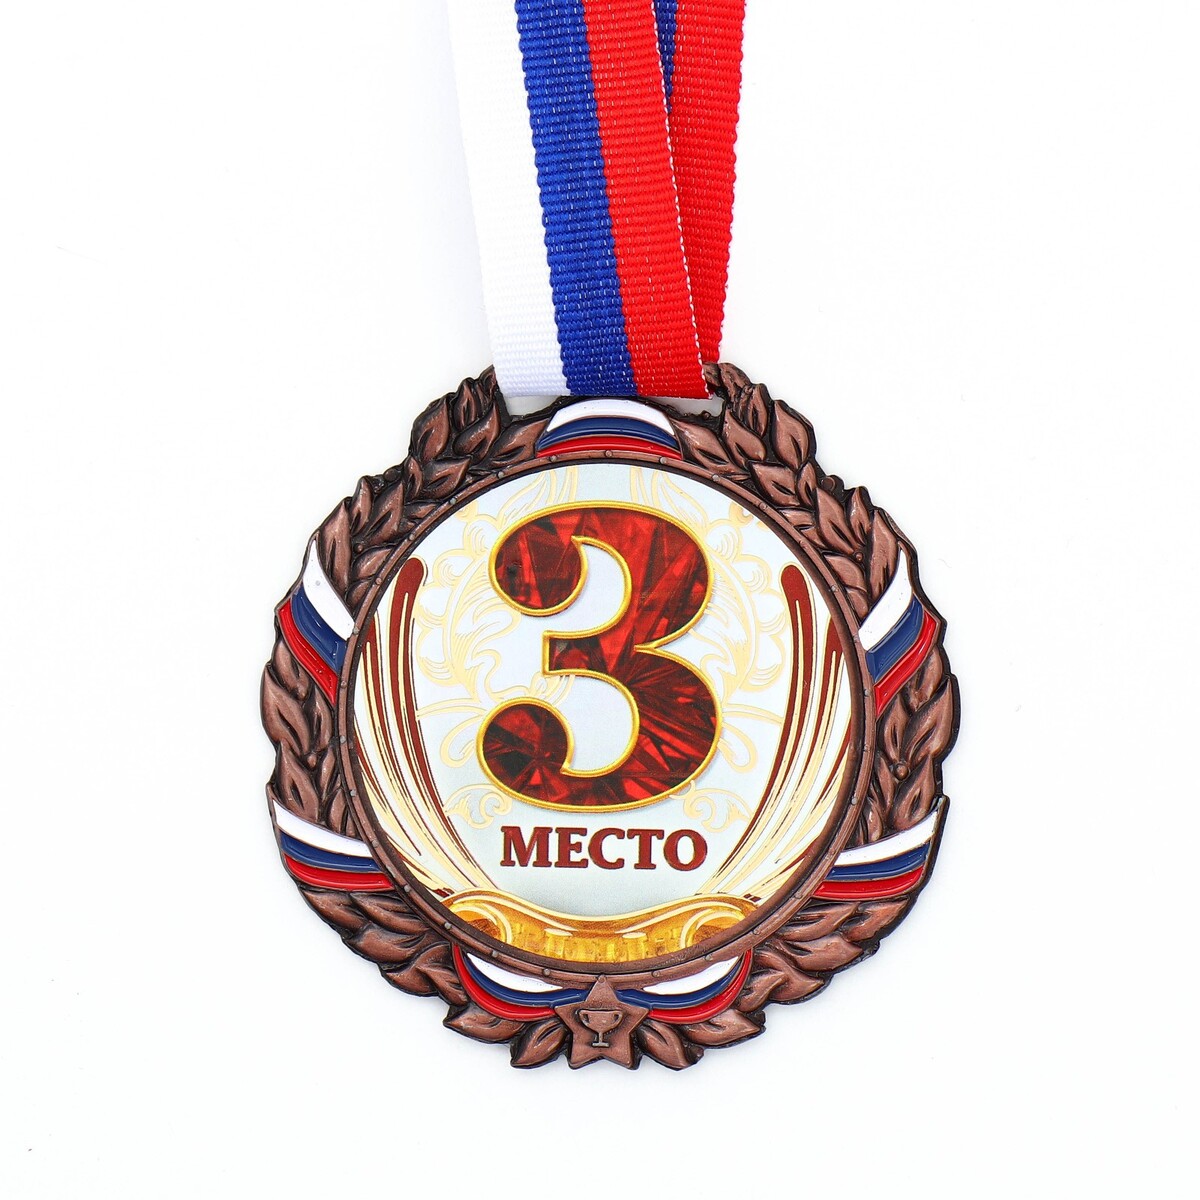 Медаль призовая 075 диам 6,5 см. 3 место, триколор. цвет бронз. с лентой медаль призовая 193 диам 3 5 см 3 место триколор бронз без ленты